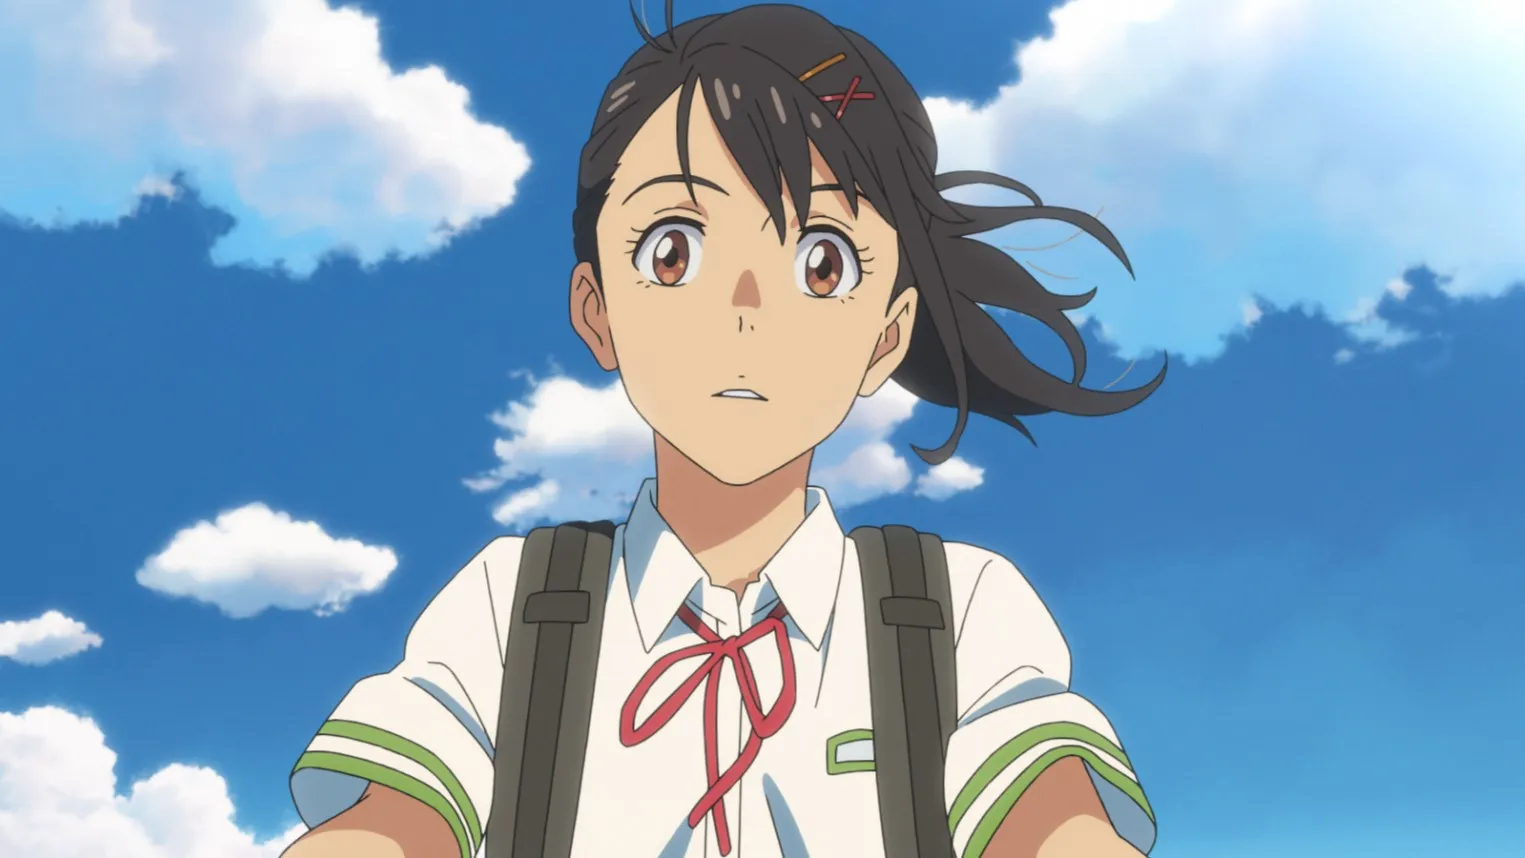 El anime Suzume de Makoto Shinkai es adaptado al manga